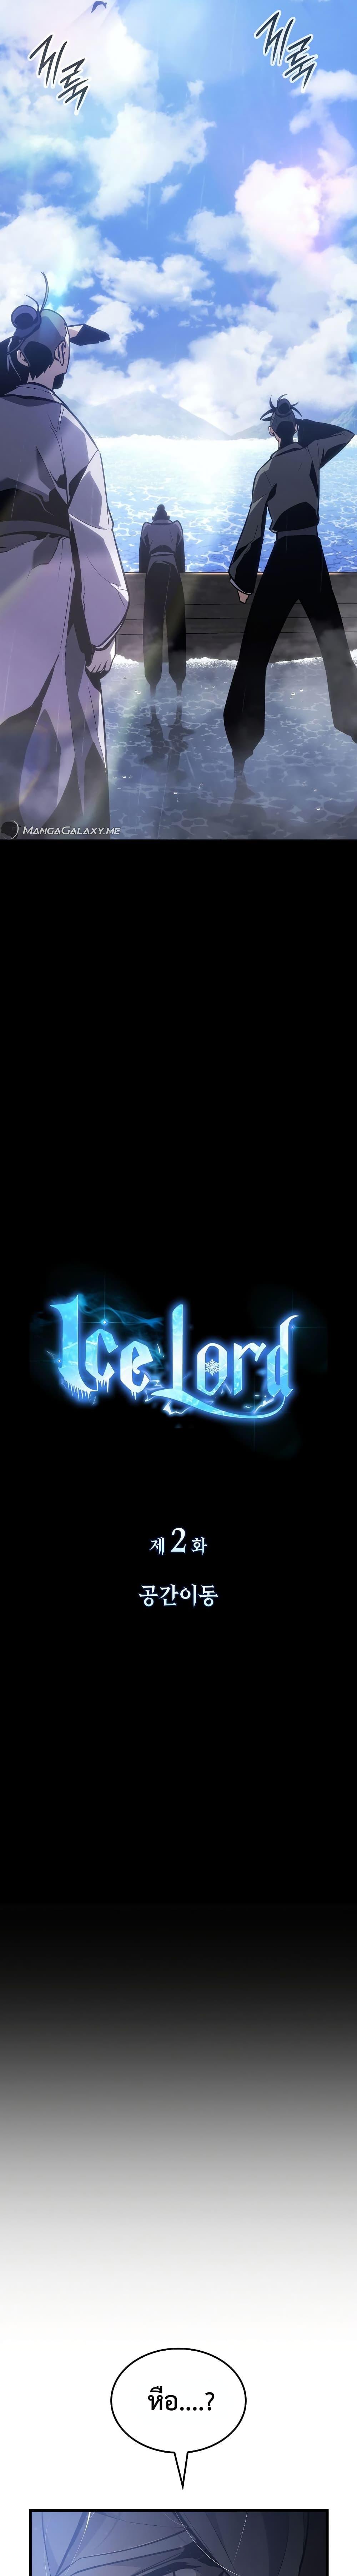 Ice Lord ตอนที่ 2 (20)